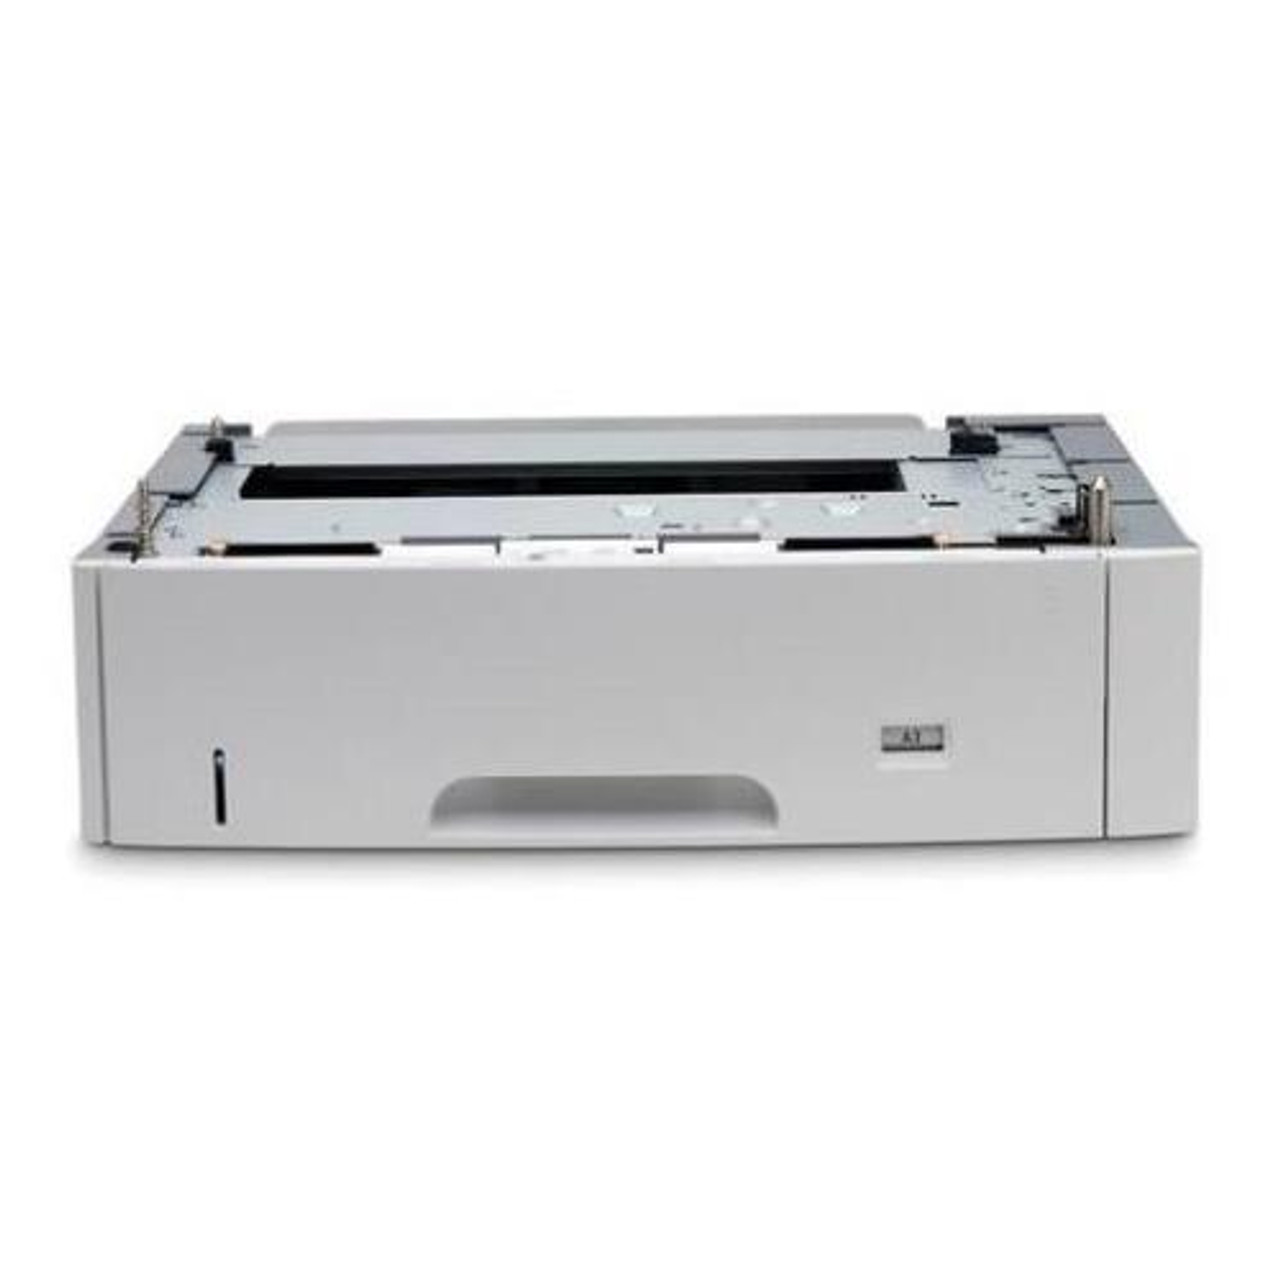 RM1-1486 HP Cassette-250-Sheets Tray for LaserJet 2400 Printer (Refurbished)